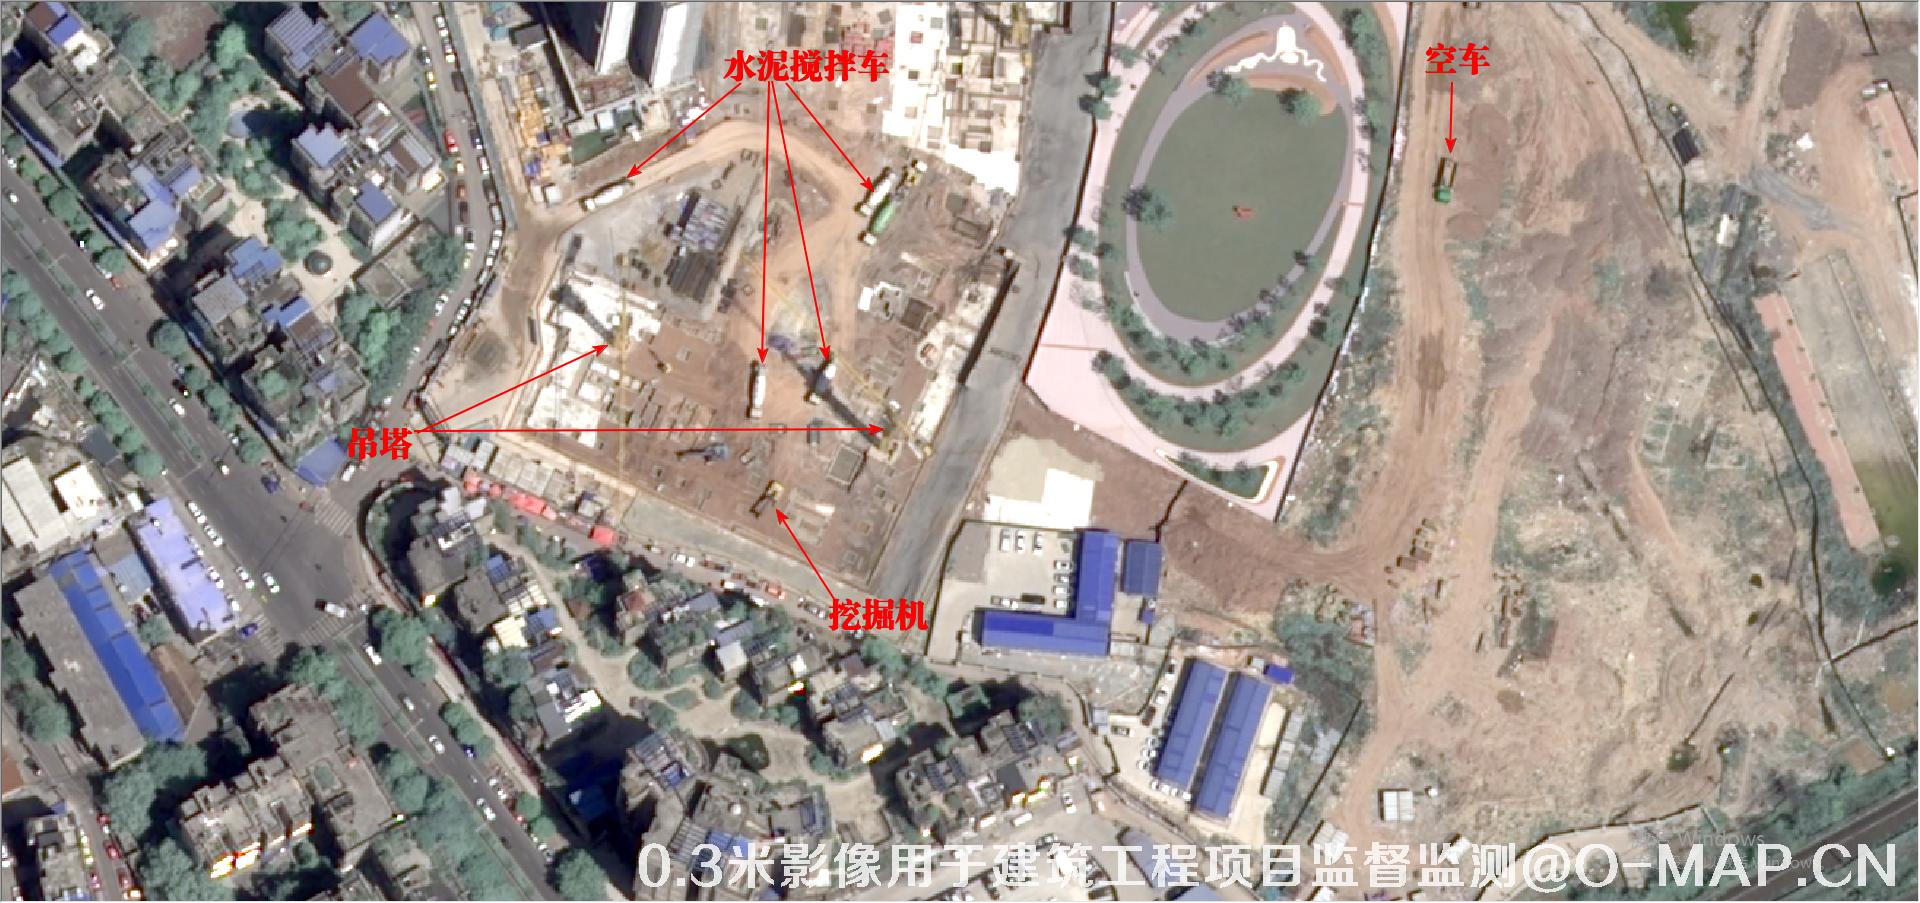 0.3米卫星拍摄的建筑工程项目现场影像图